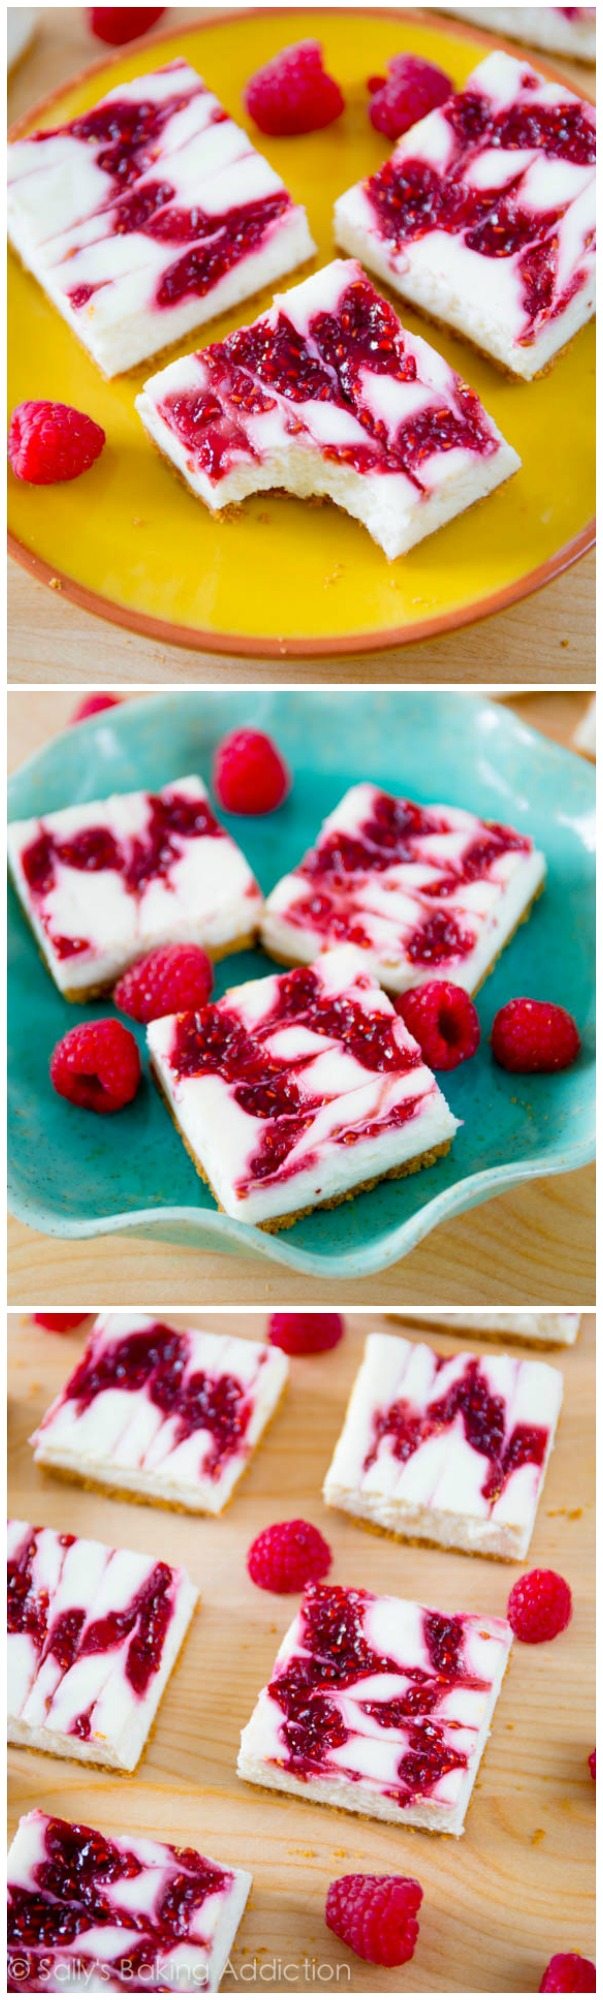 3 images of raspberry swirl cheesecake bars